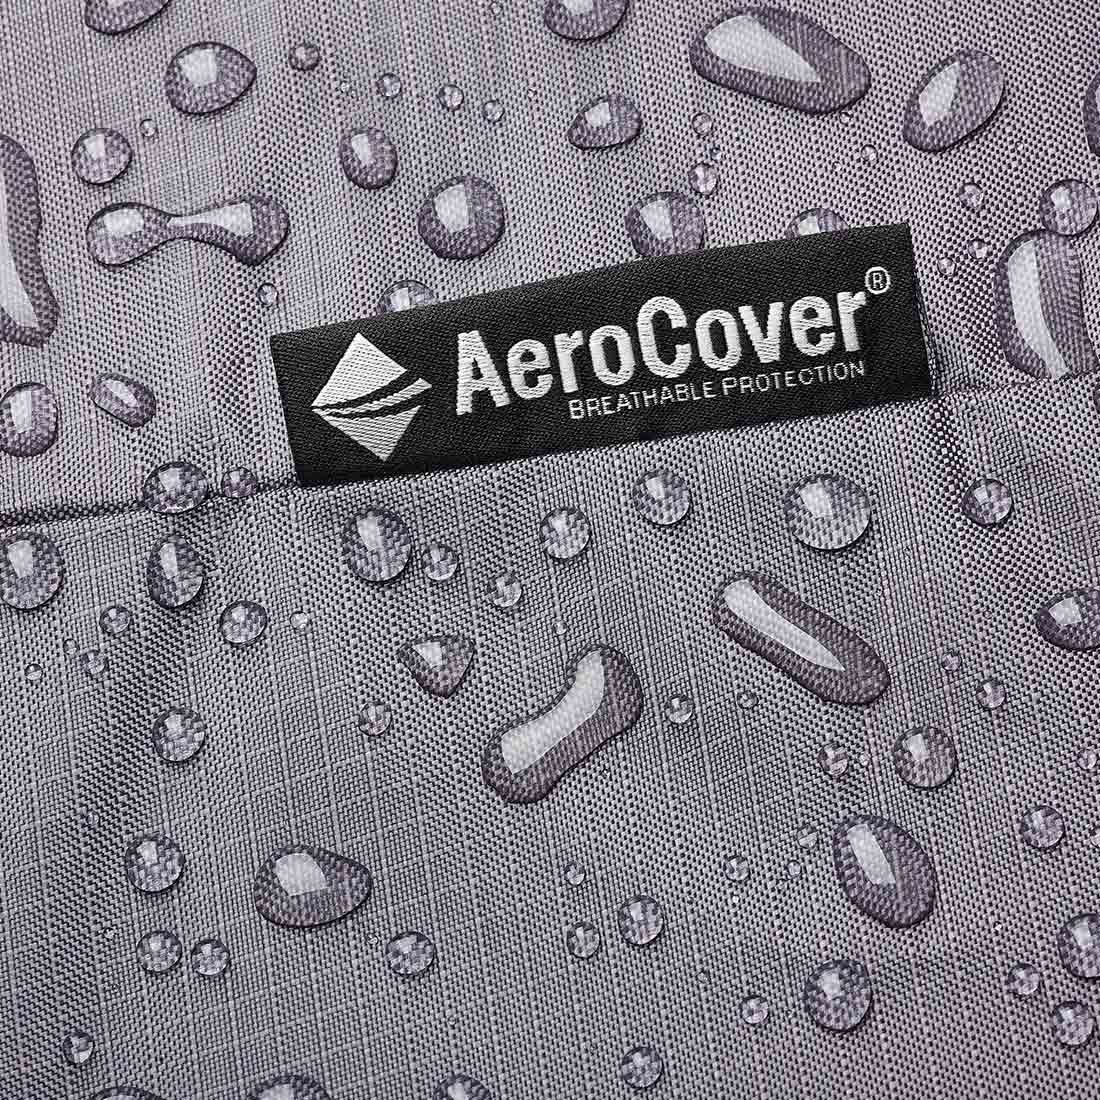 AeroCover Schutzhülle für Sitzgruppe 240x190x85cm Polyester